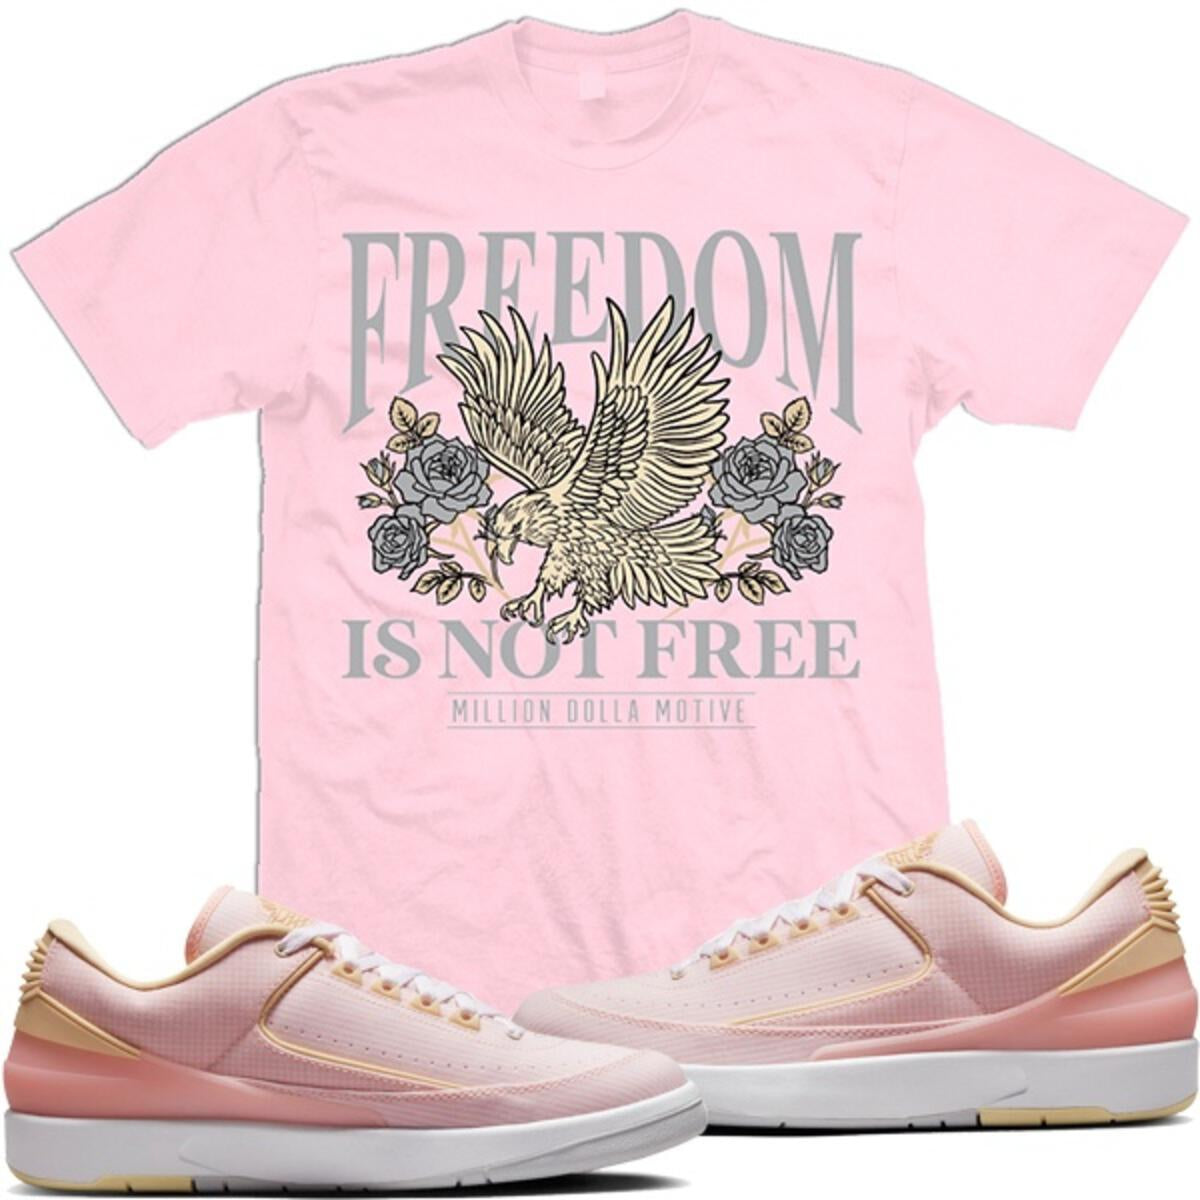 Motive Freedeom Not Free T-shirt Pink